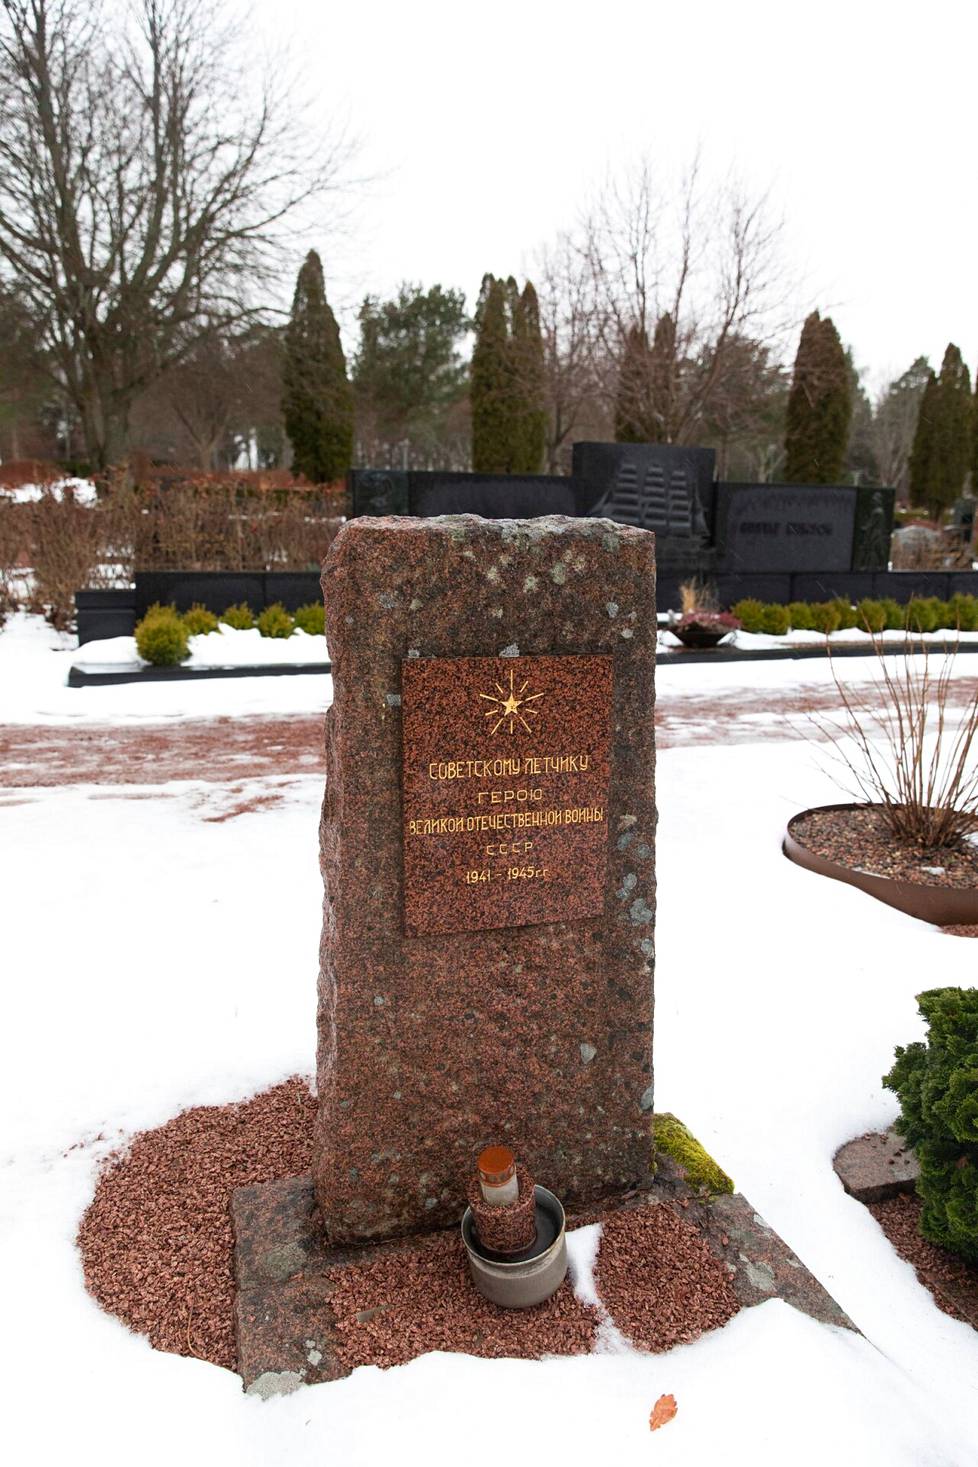 Maarianhaminan hautausmaalla on Venäjän konsulaatin kustantama muistomerkki toisen maailmansodan aikana Kökarista kuolleena löytyneelle venäläislentäjälle.